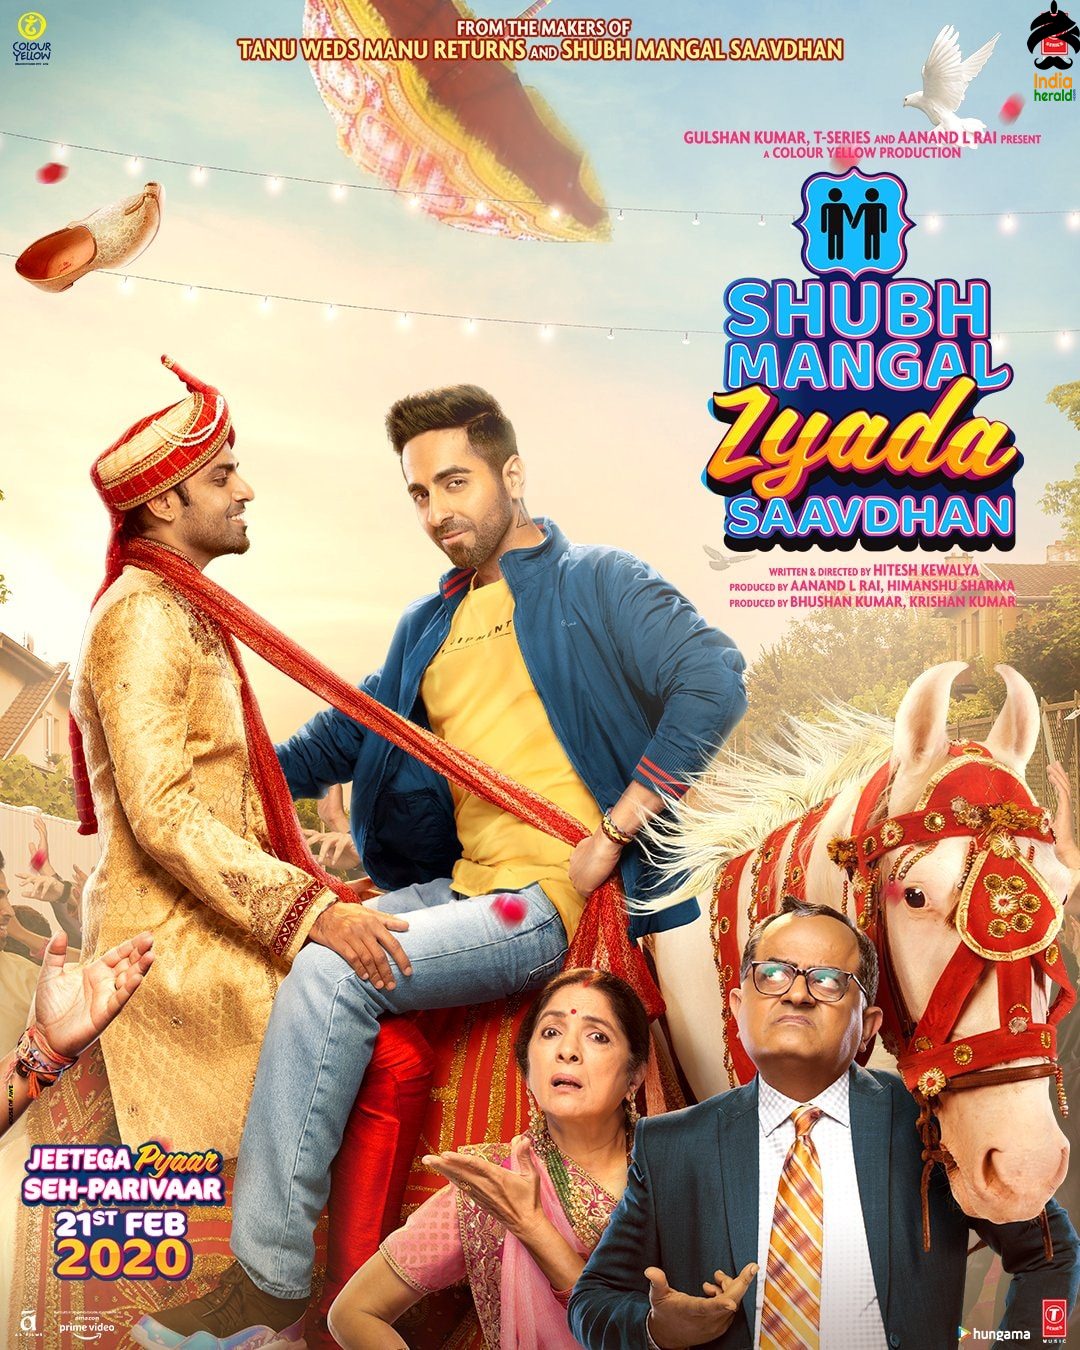 Shubh Mangal Zyada Saavdhan Movie Posters